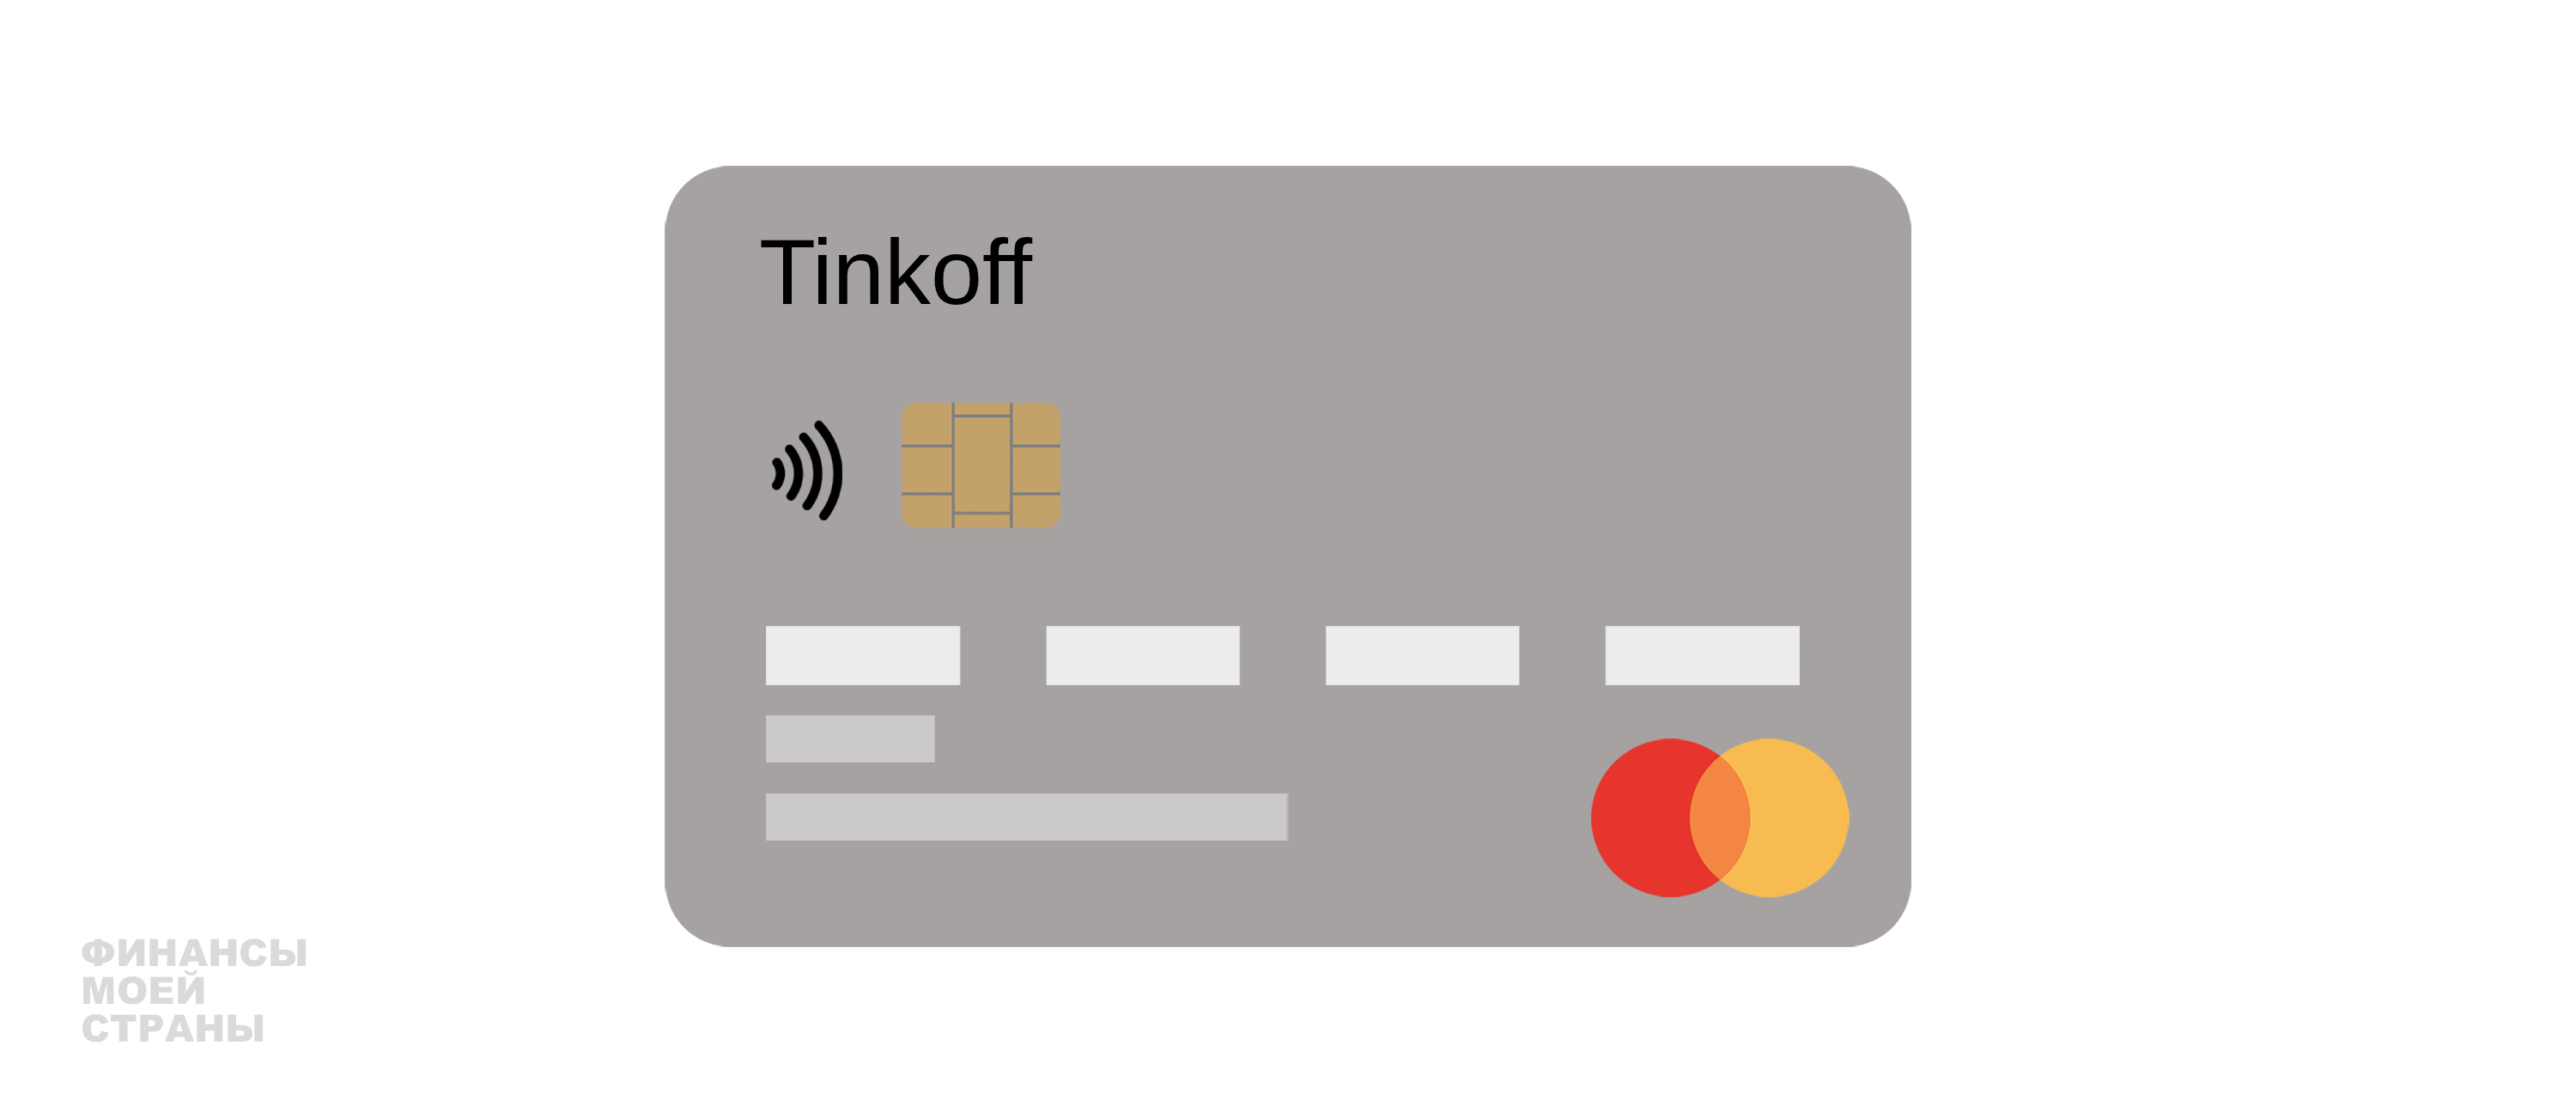 Карта тинькофф кредитная условия и проценты отзывы. Tinkoff золото.